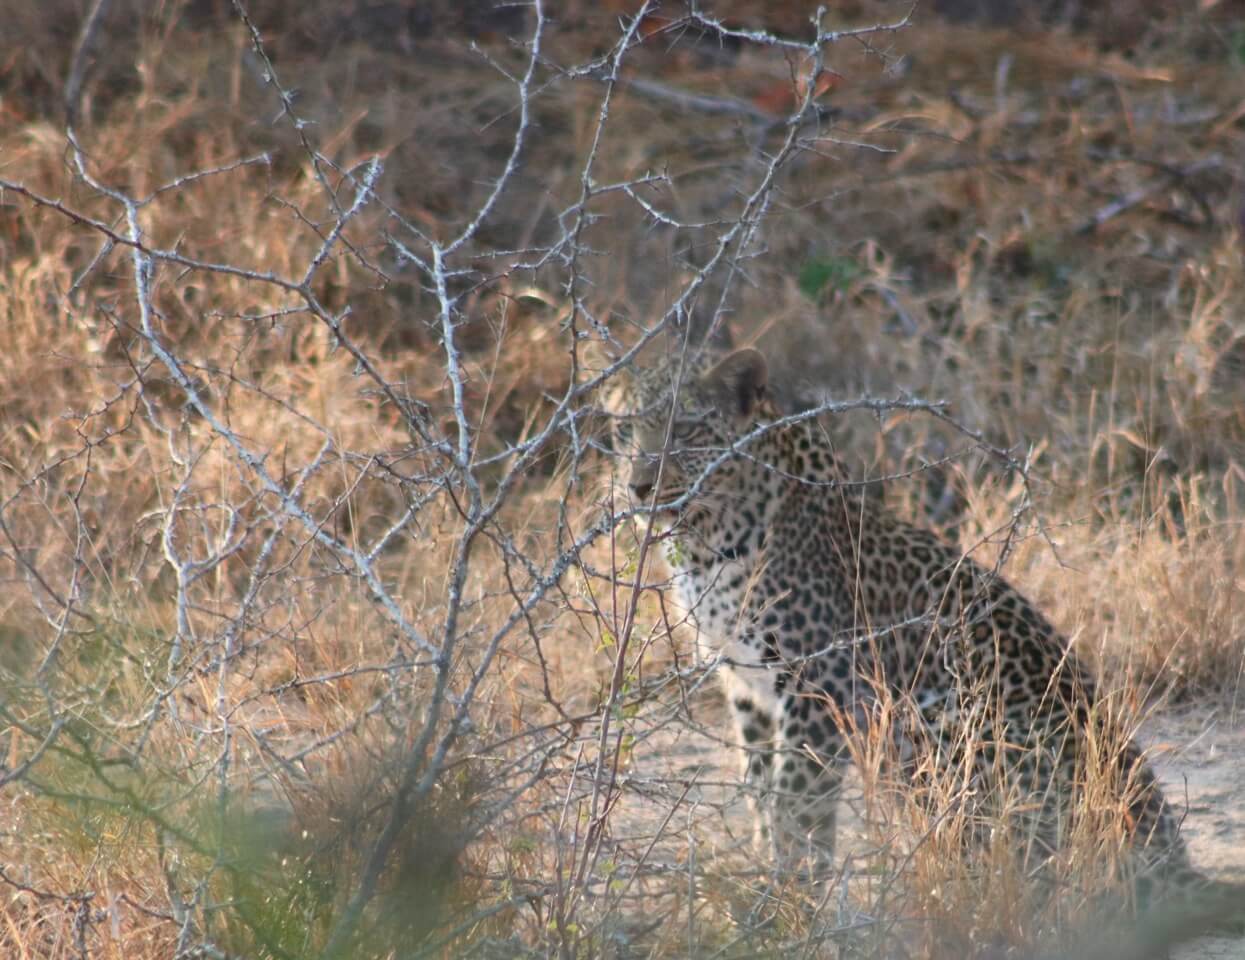 Leopardo no Kruger Park, África do Sul